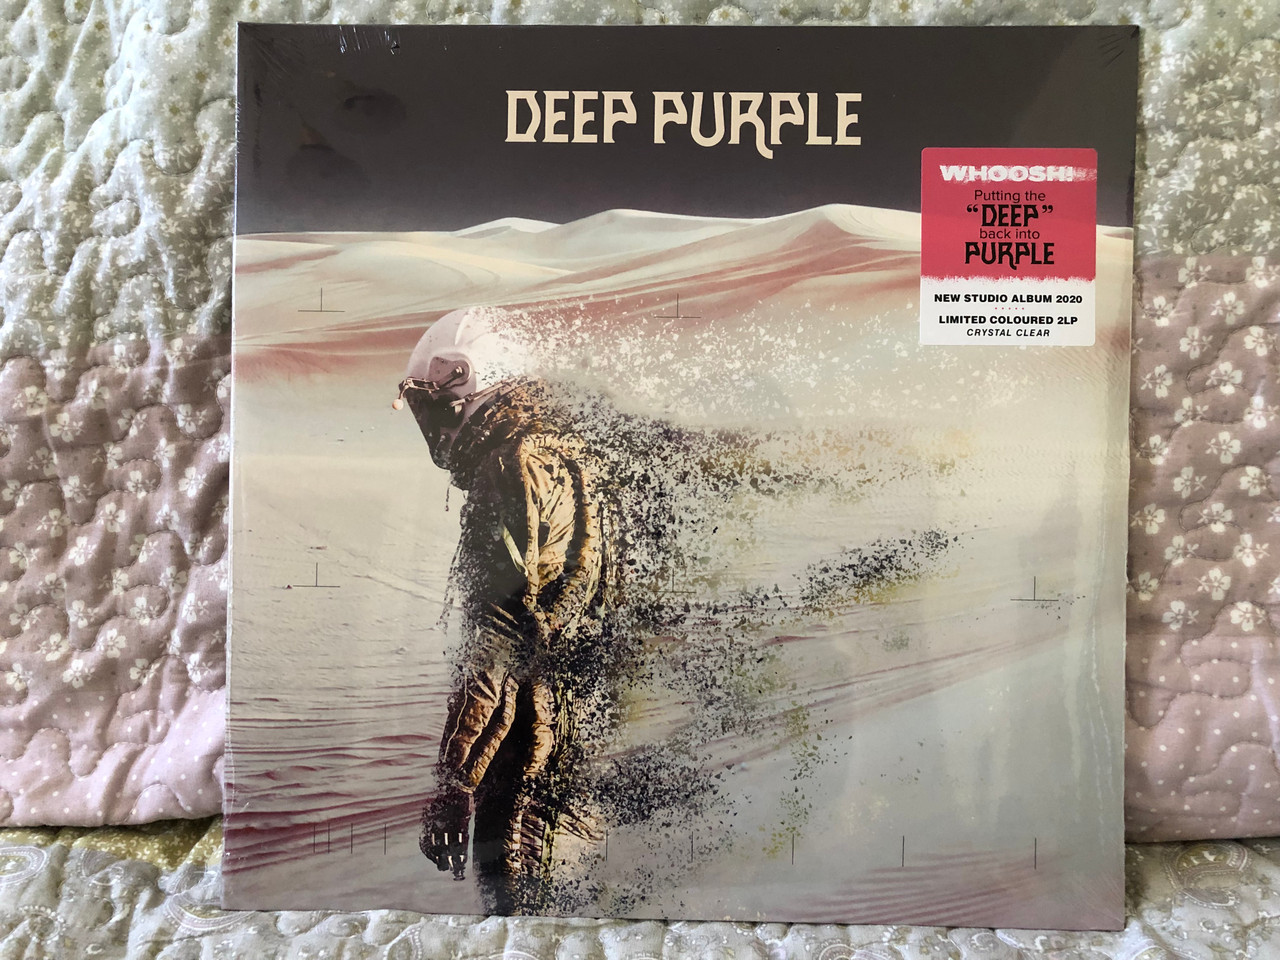 https://cdn10.bigcommerce.com/s-62bdpkt7pb/products/0/images/254797/Deep_Purple_Whoosh_Putting_The_Deep_back_into_Purple_New_Studio_Album_2020._Limited_Coloured_2LP_Ear_Music_2x_LP_2020_0214744EMU_1__68888.1664357619.1280.1280.JPG?c=2&_gl=1*mcnidr*_ga*MjA2NTIxMjE2MC4xNTkwNTEyNTMy*_ga_WS2VZYPC6G*MTY2NDM1NjQxNi41NjkuMS4xNjY0MzU3NDE1LjQ3LjAuMA..